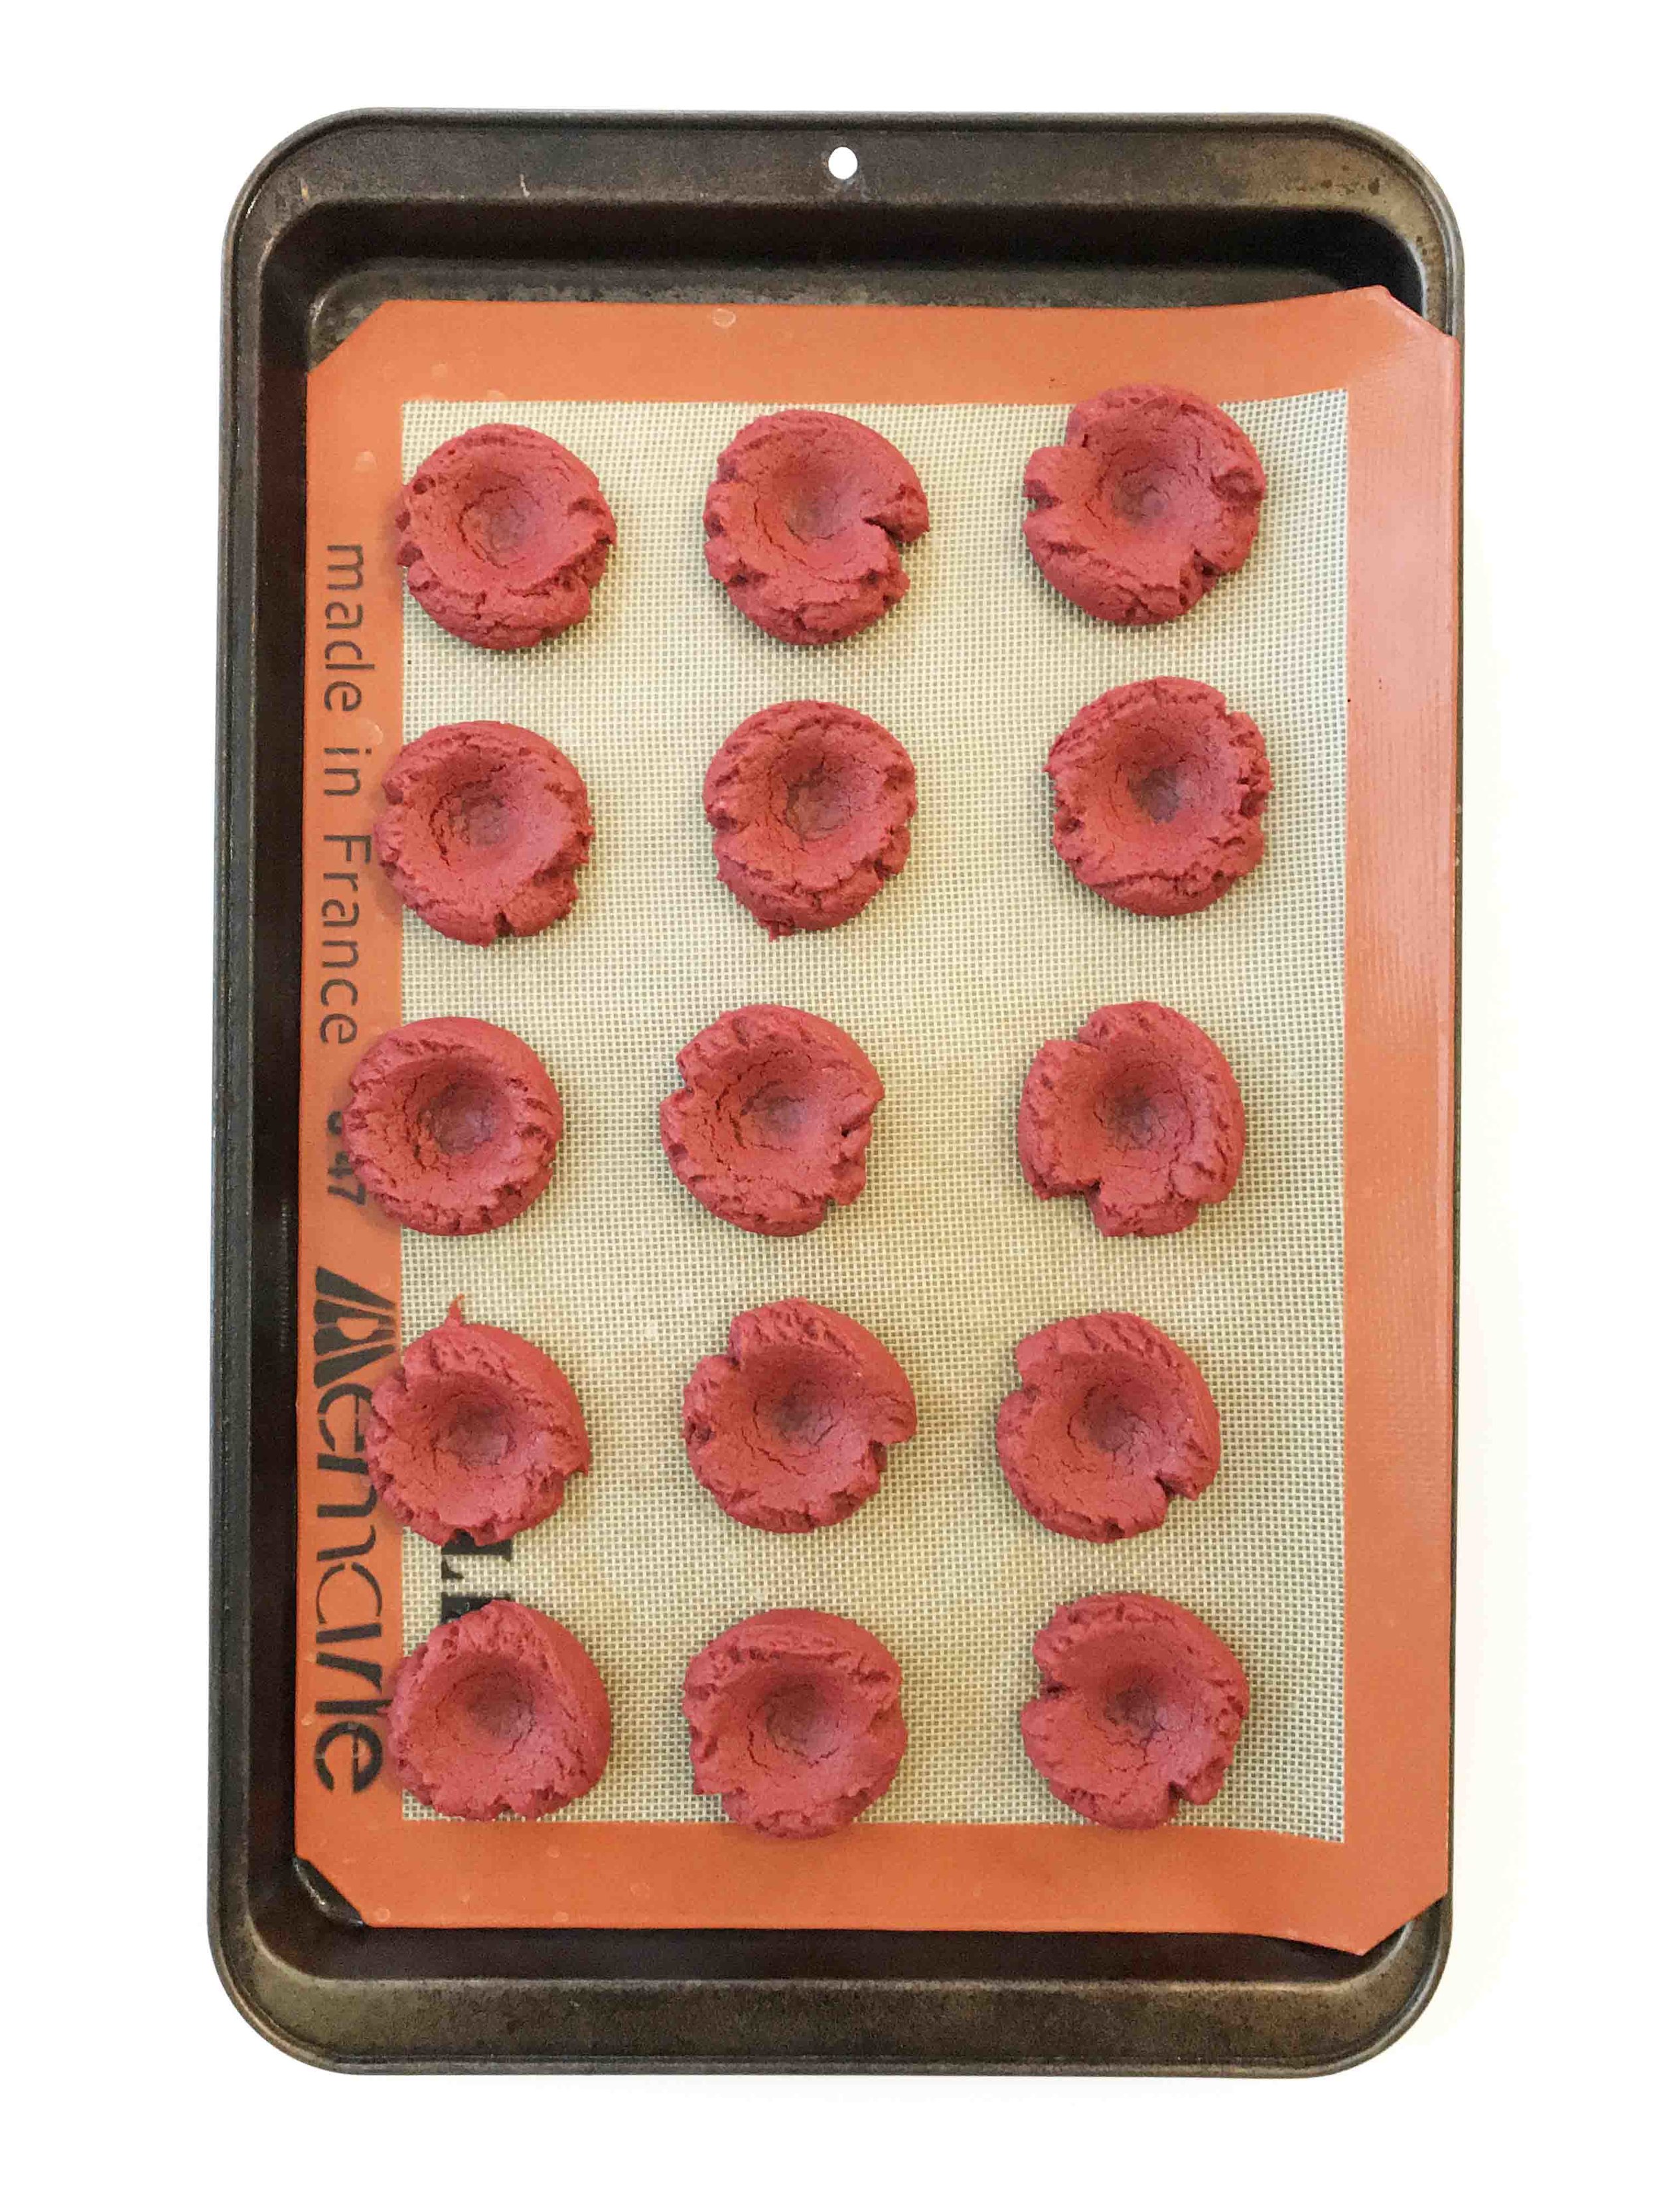 red-velvet-thumbprint-cookies8.jpg